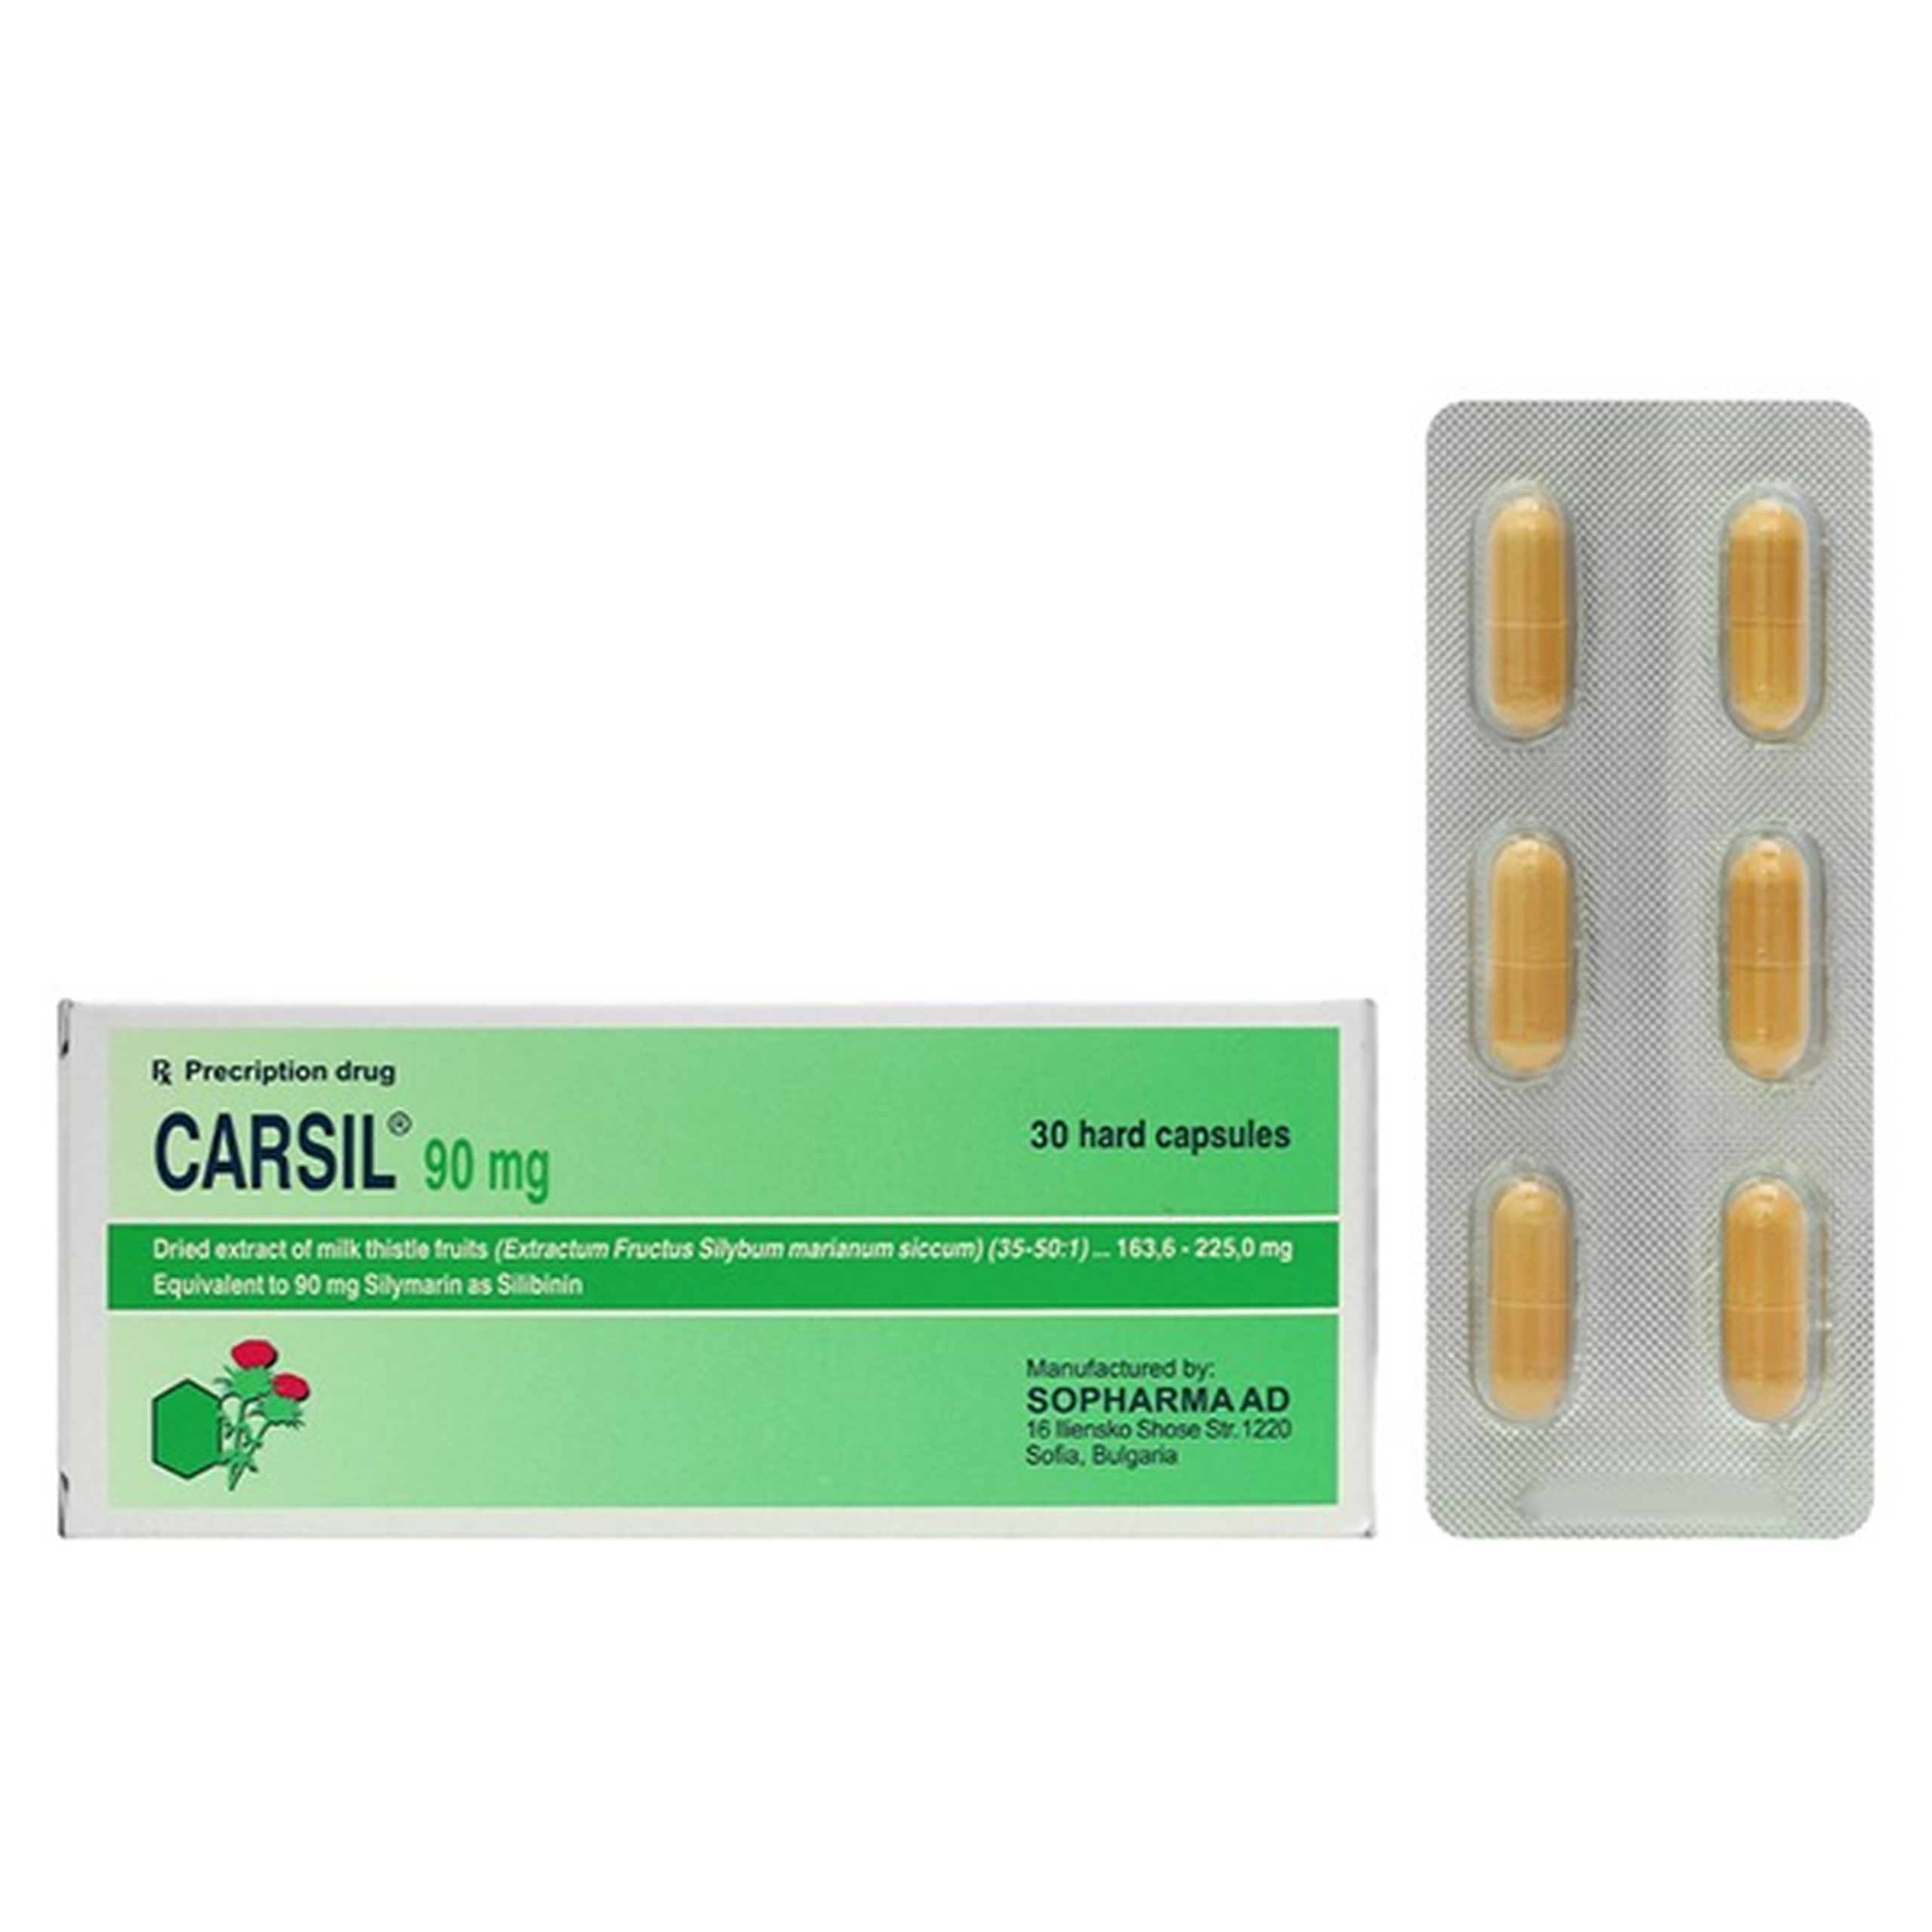 Thuốc Carsil 90mg Sopharma điều trị viêm gan, xơ gan, gan nhiễm mỡ (5 vỉ x 6 viên)